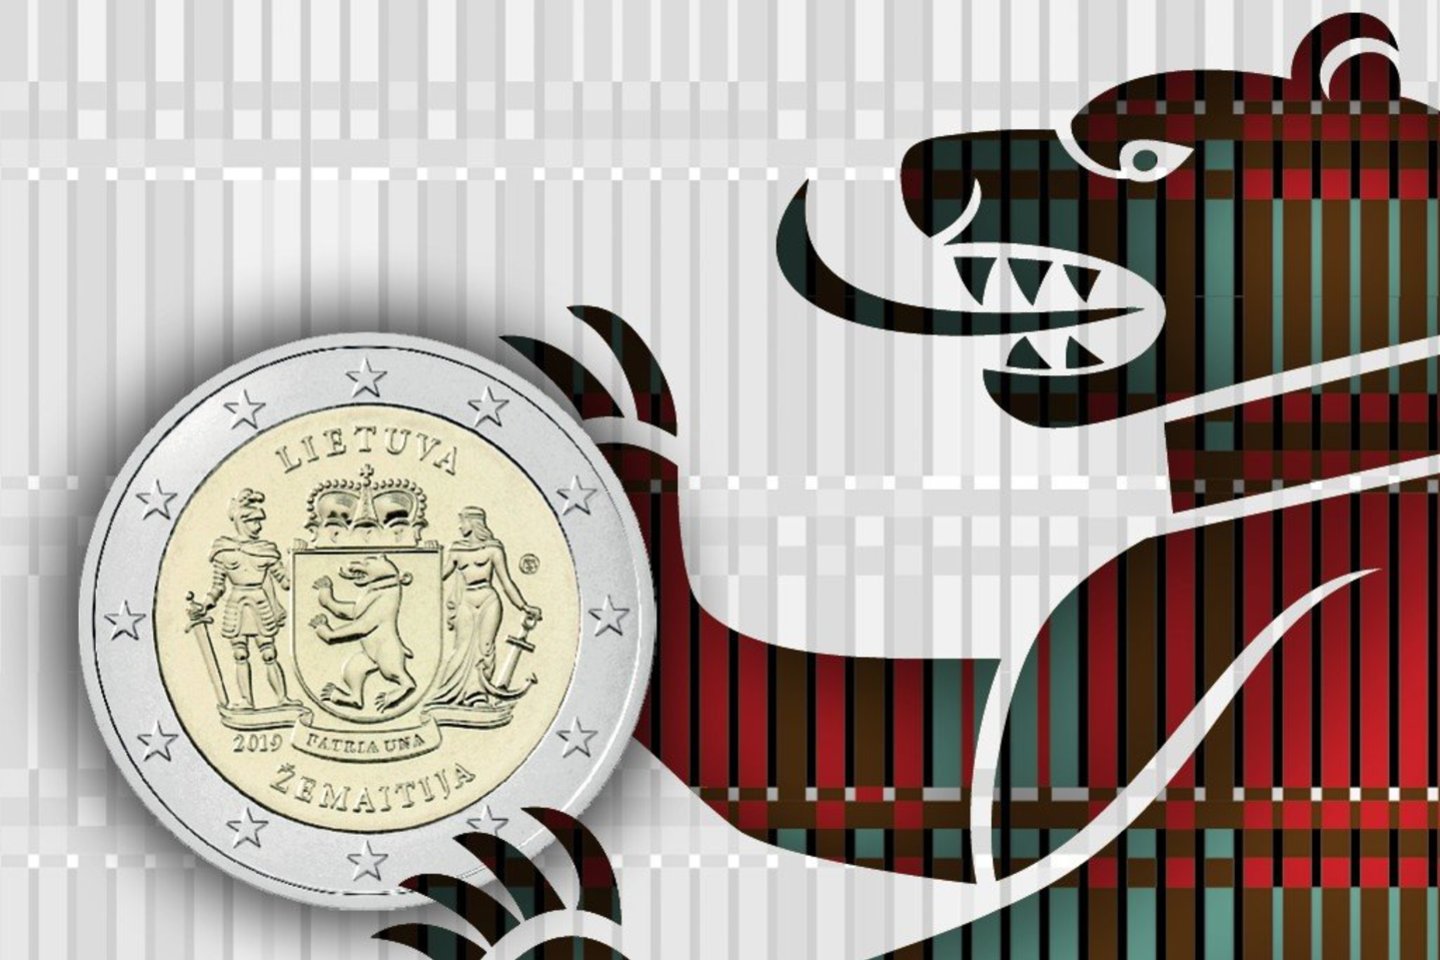  Proginė moneta Žemaitijai yra pirmoji iš serijos „Lietuvos etnografiniai regionai“.<br> LB nuotr. 